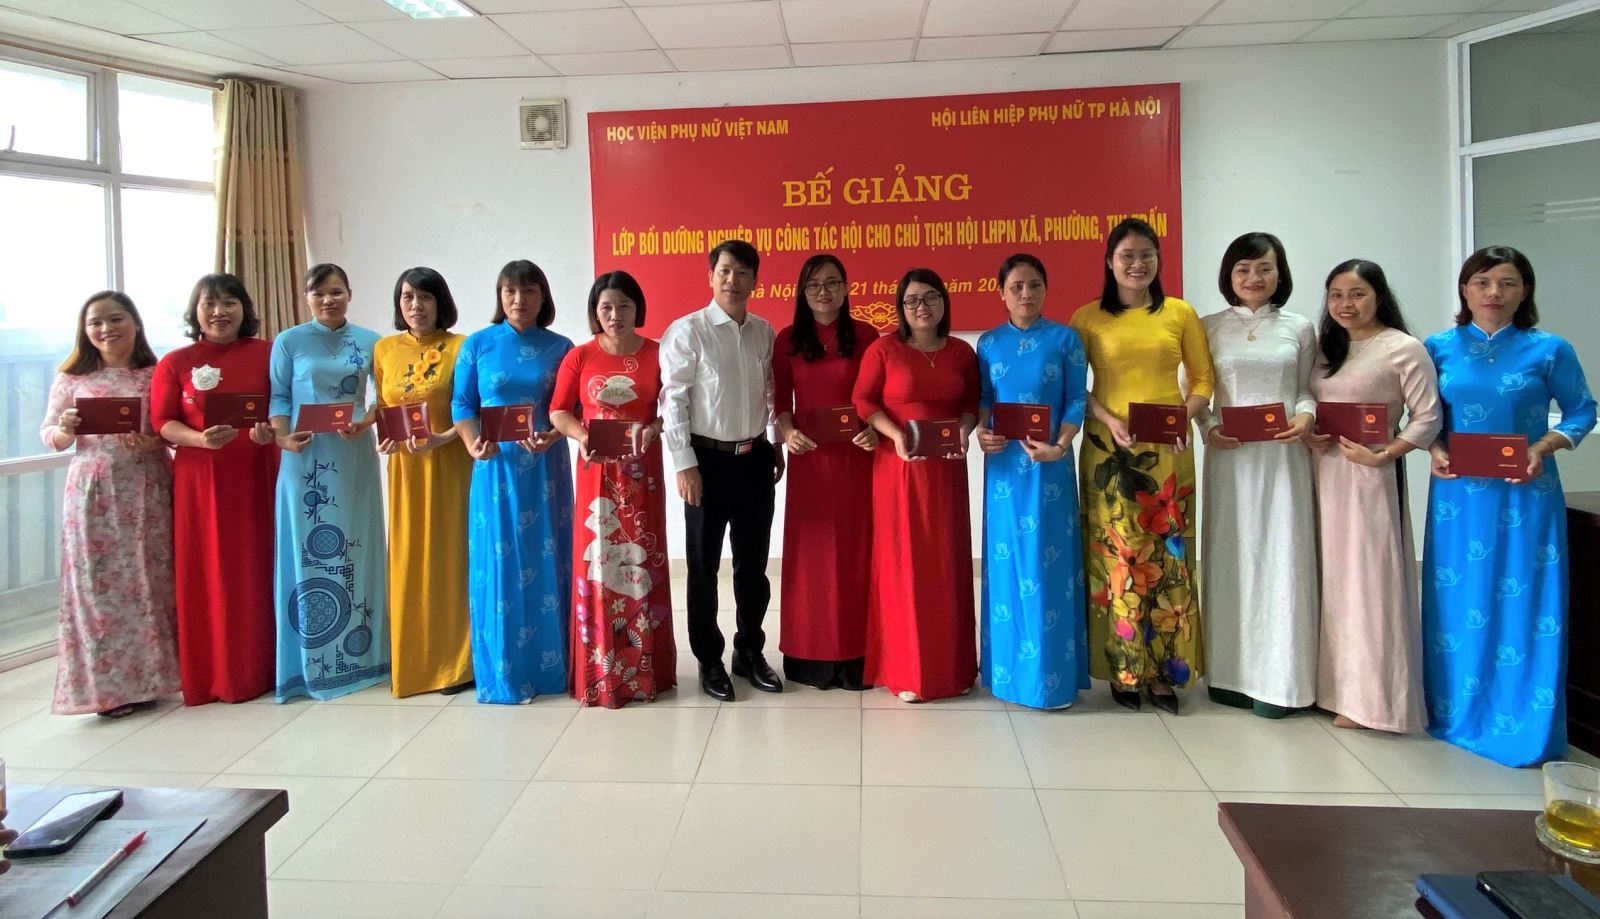 Bế giảng lớp “Bồi dưỡng Nghiệp vụ công tác Hội” cho Chủ tịch Hội LPHPN cấp cơ sở thành phố Hà Nội 